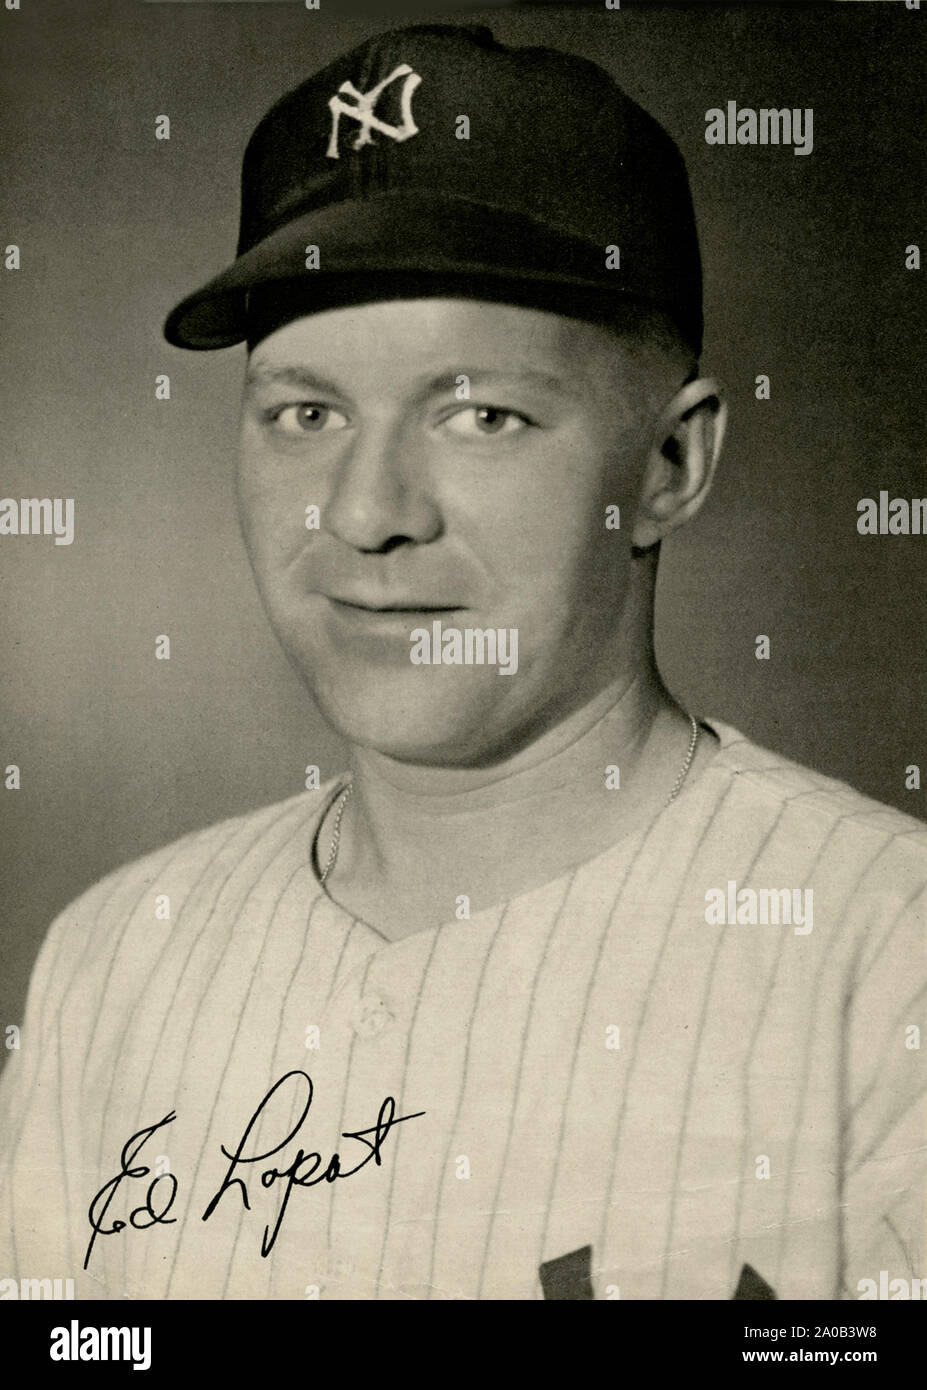 Vintage fotografia del giocatore di baseball ed Lopat che ha giocato con i New York Yankees negli anni quaranta e cinquanta. Foto Stock